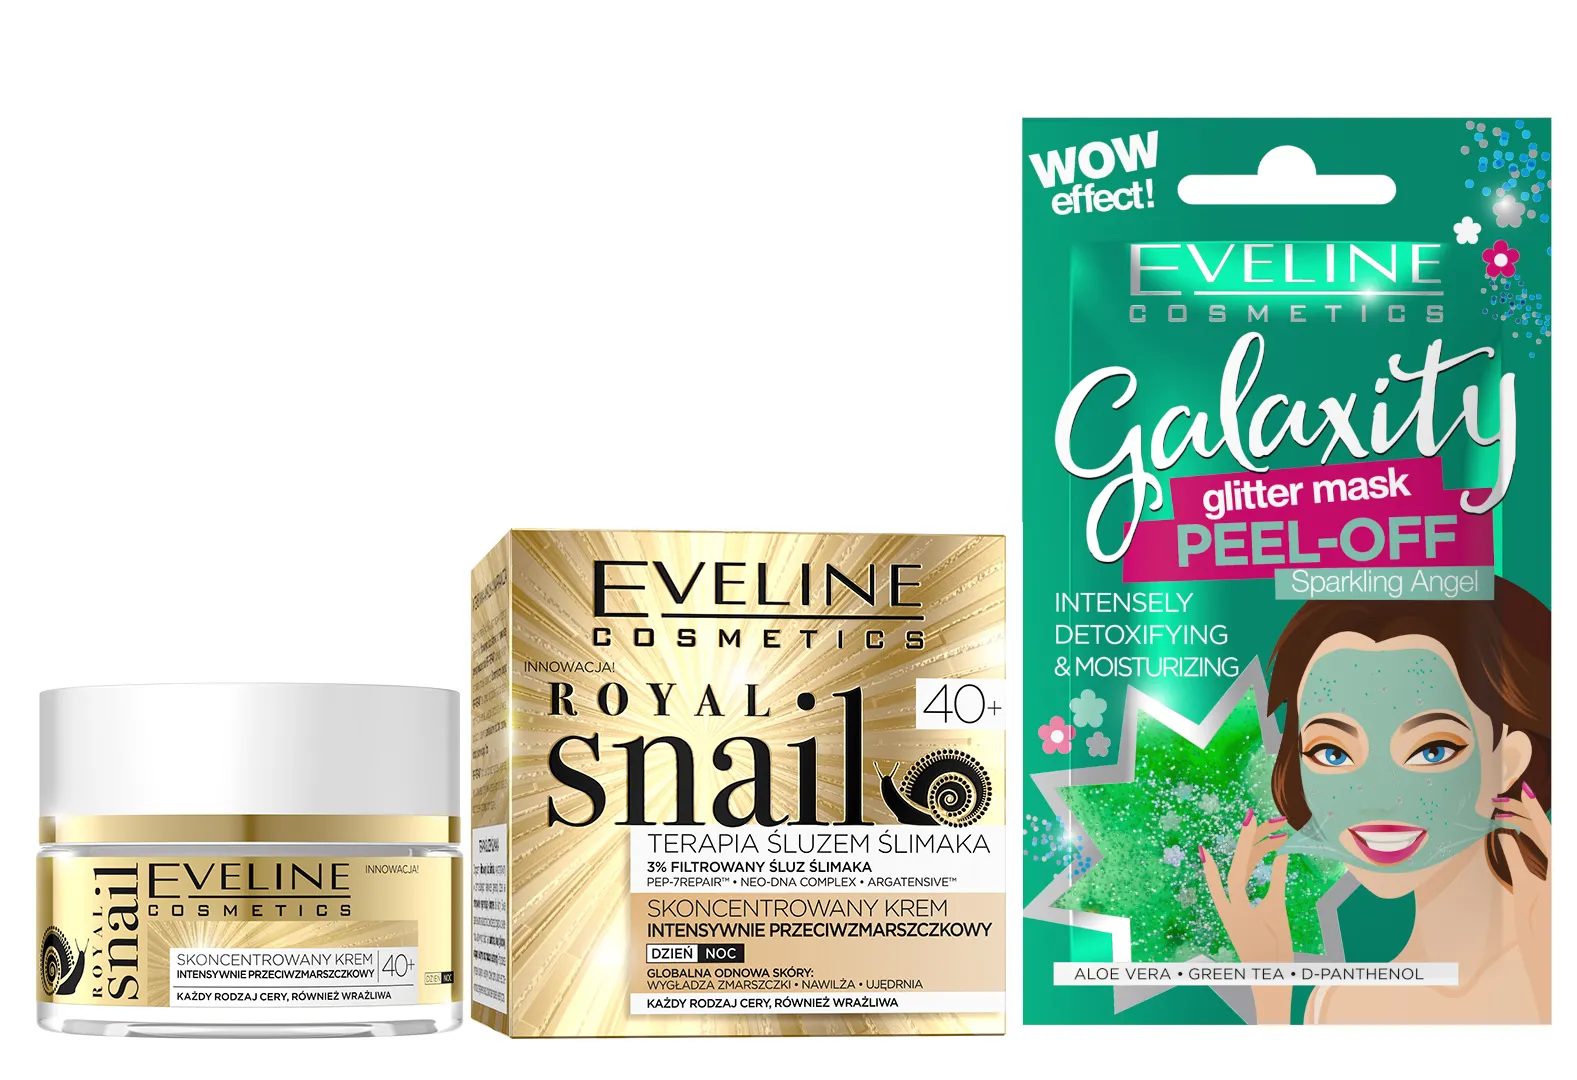 Eveline Cosmetics Royal Snail skoncentrowany krem intensywnie p/zmarszczkowy na dzien i na noc 40+, 50 ml + Eveline Cosmetics Detoksykująco-nawilżająca maseczka peel-off z połyskującymi drobinkami, 10 ml